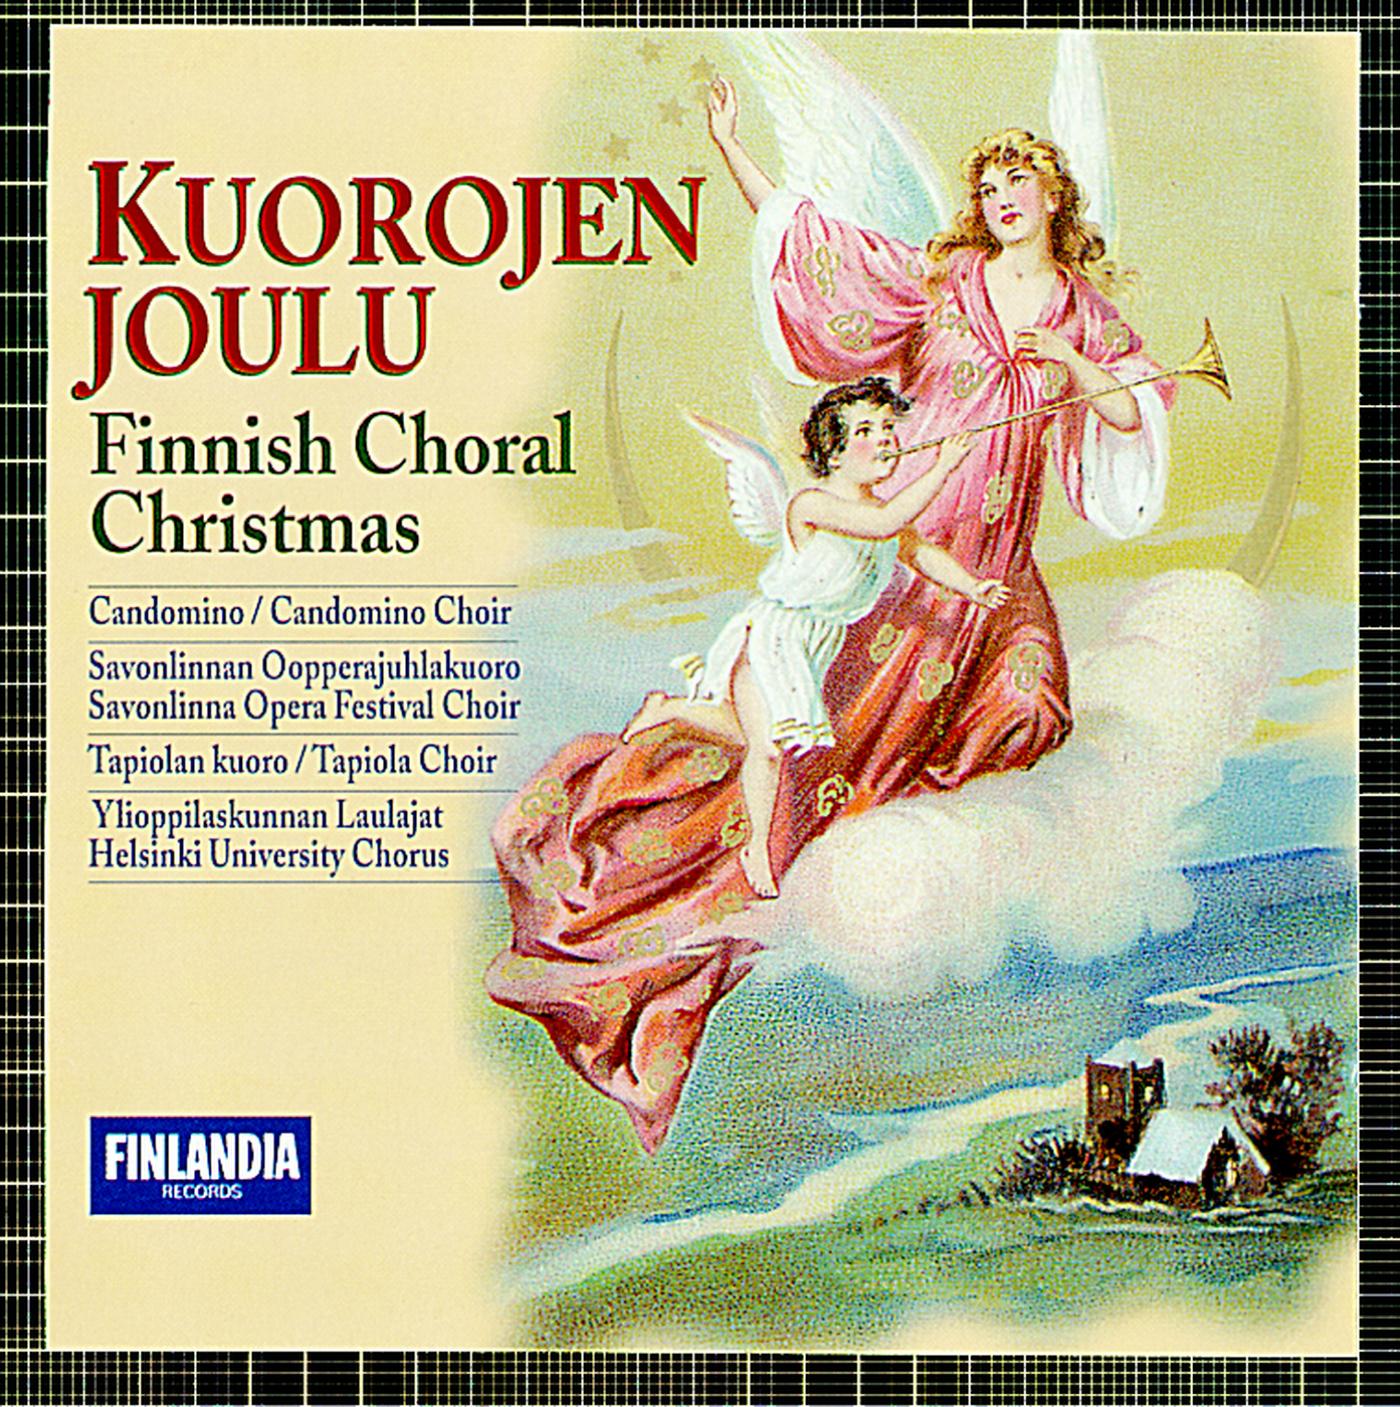 Kuorojen joulu - Finnish Choral Christmas